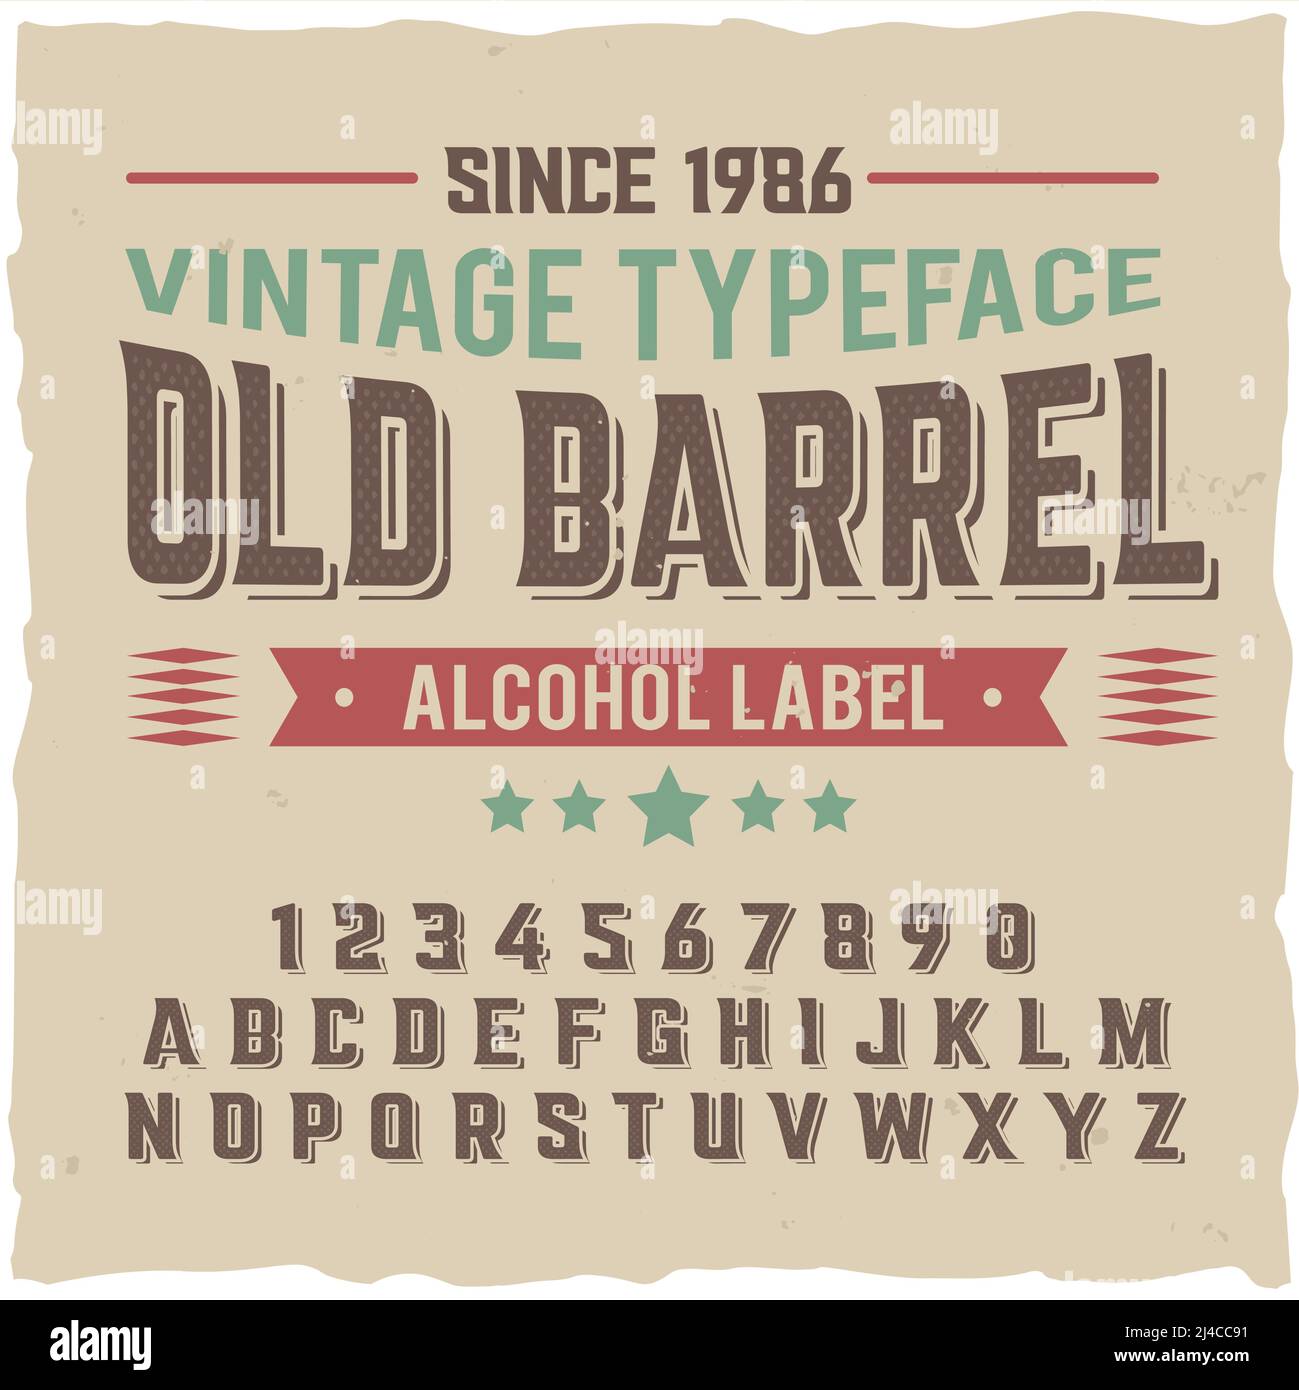 Vintage Label-Schrift namens 'Old Barrel'. Gute handgefertigte Schrift für jedes Label-Design. Stock Vektor